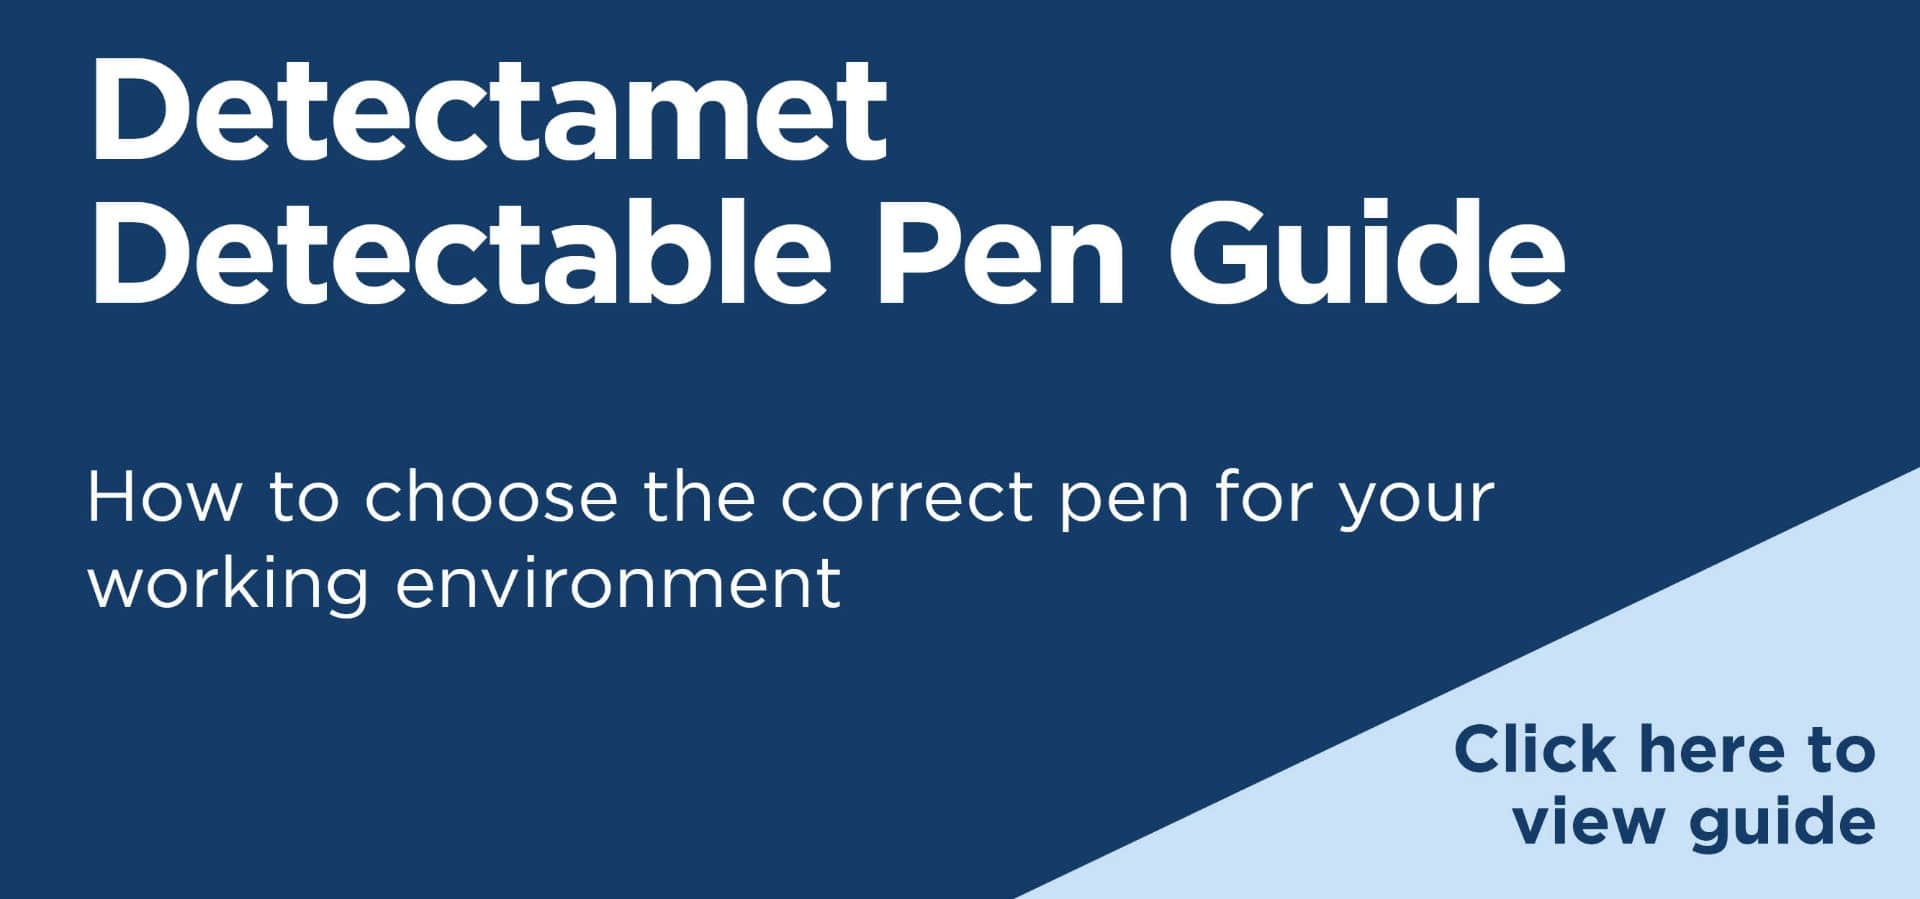 Detectamet Detectable Pen Guide